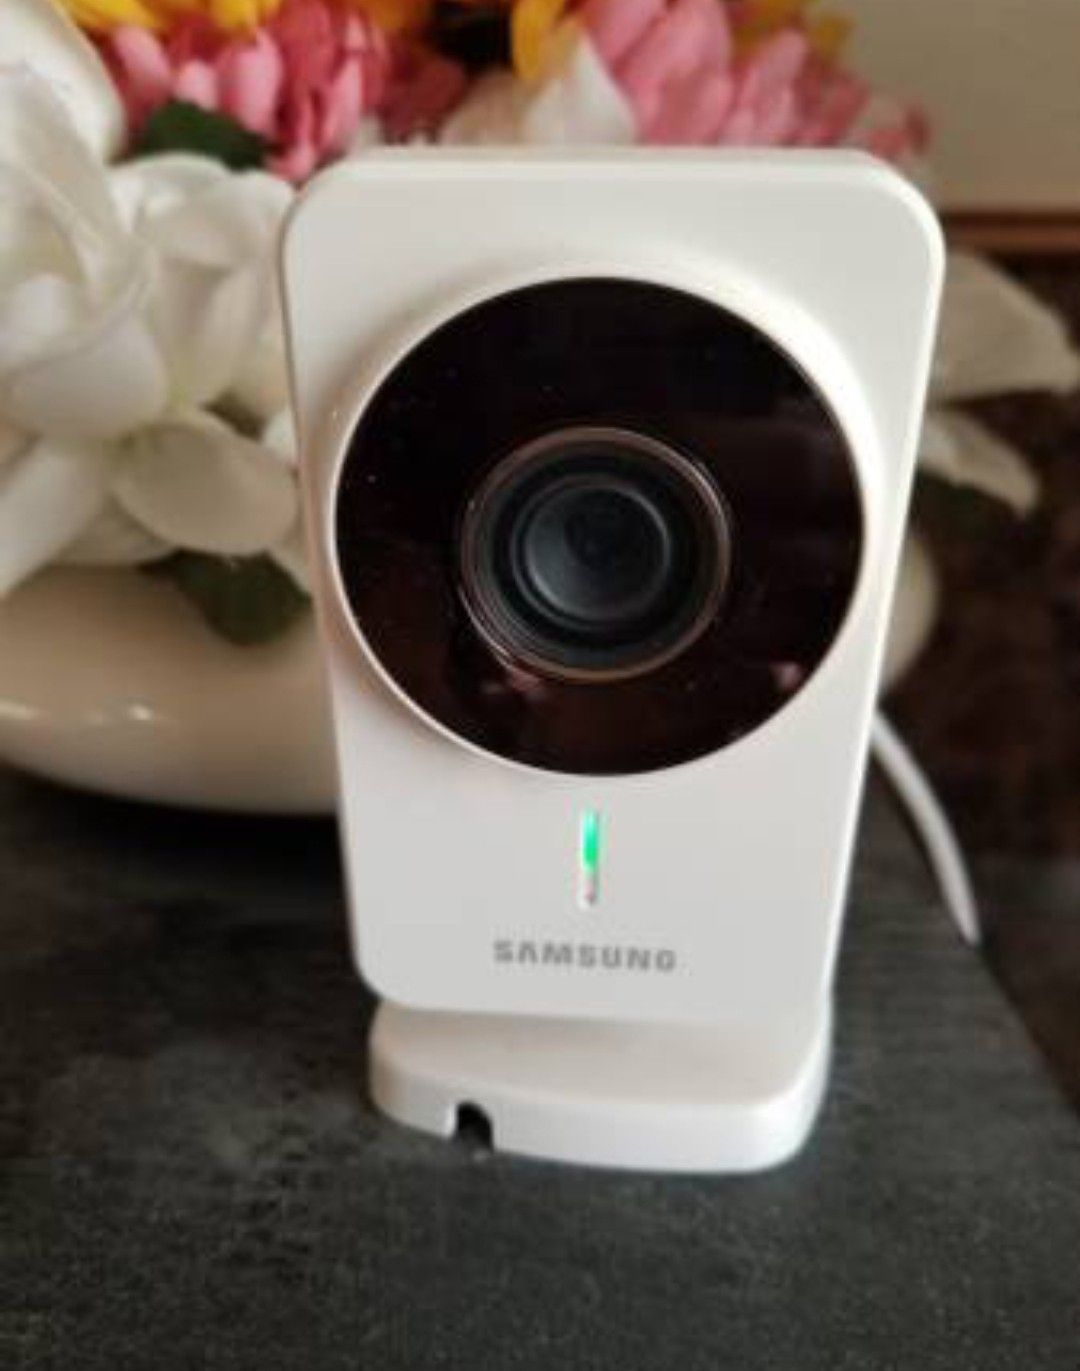 Samsung smartcam security Camera